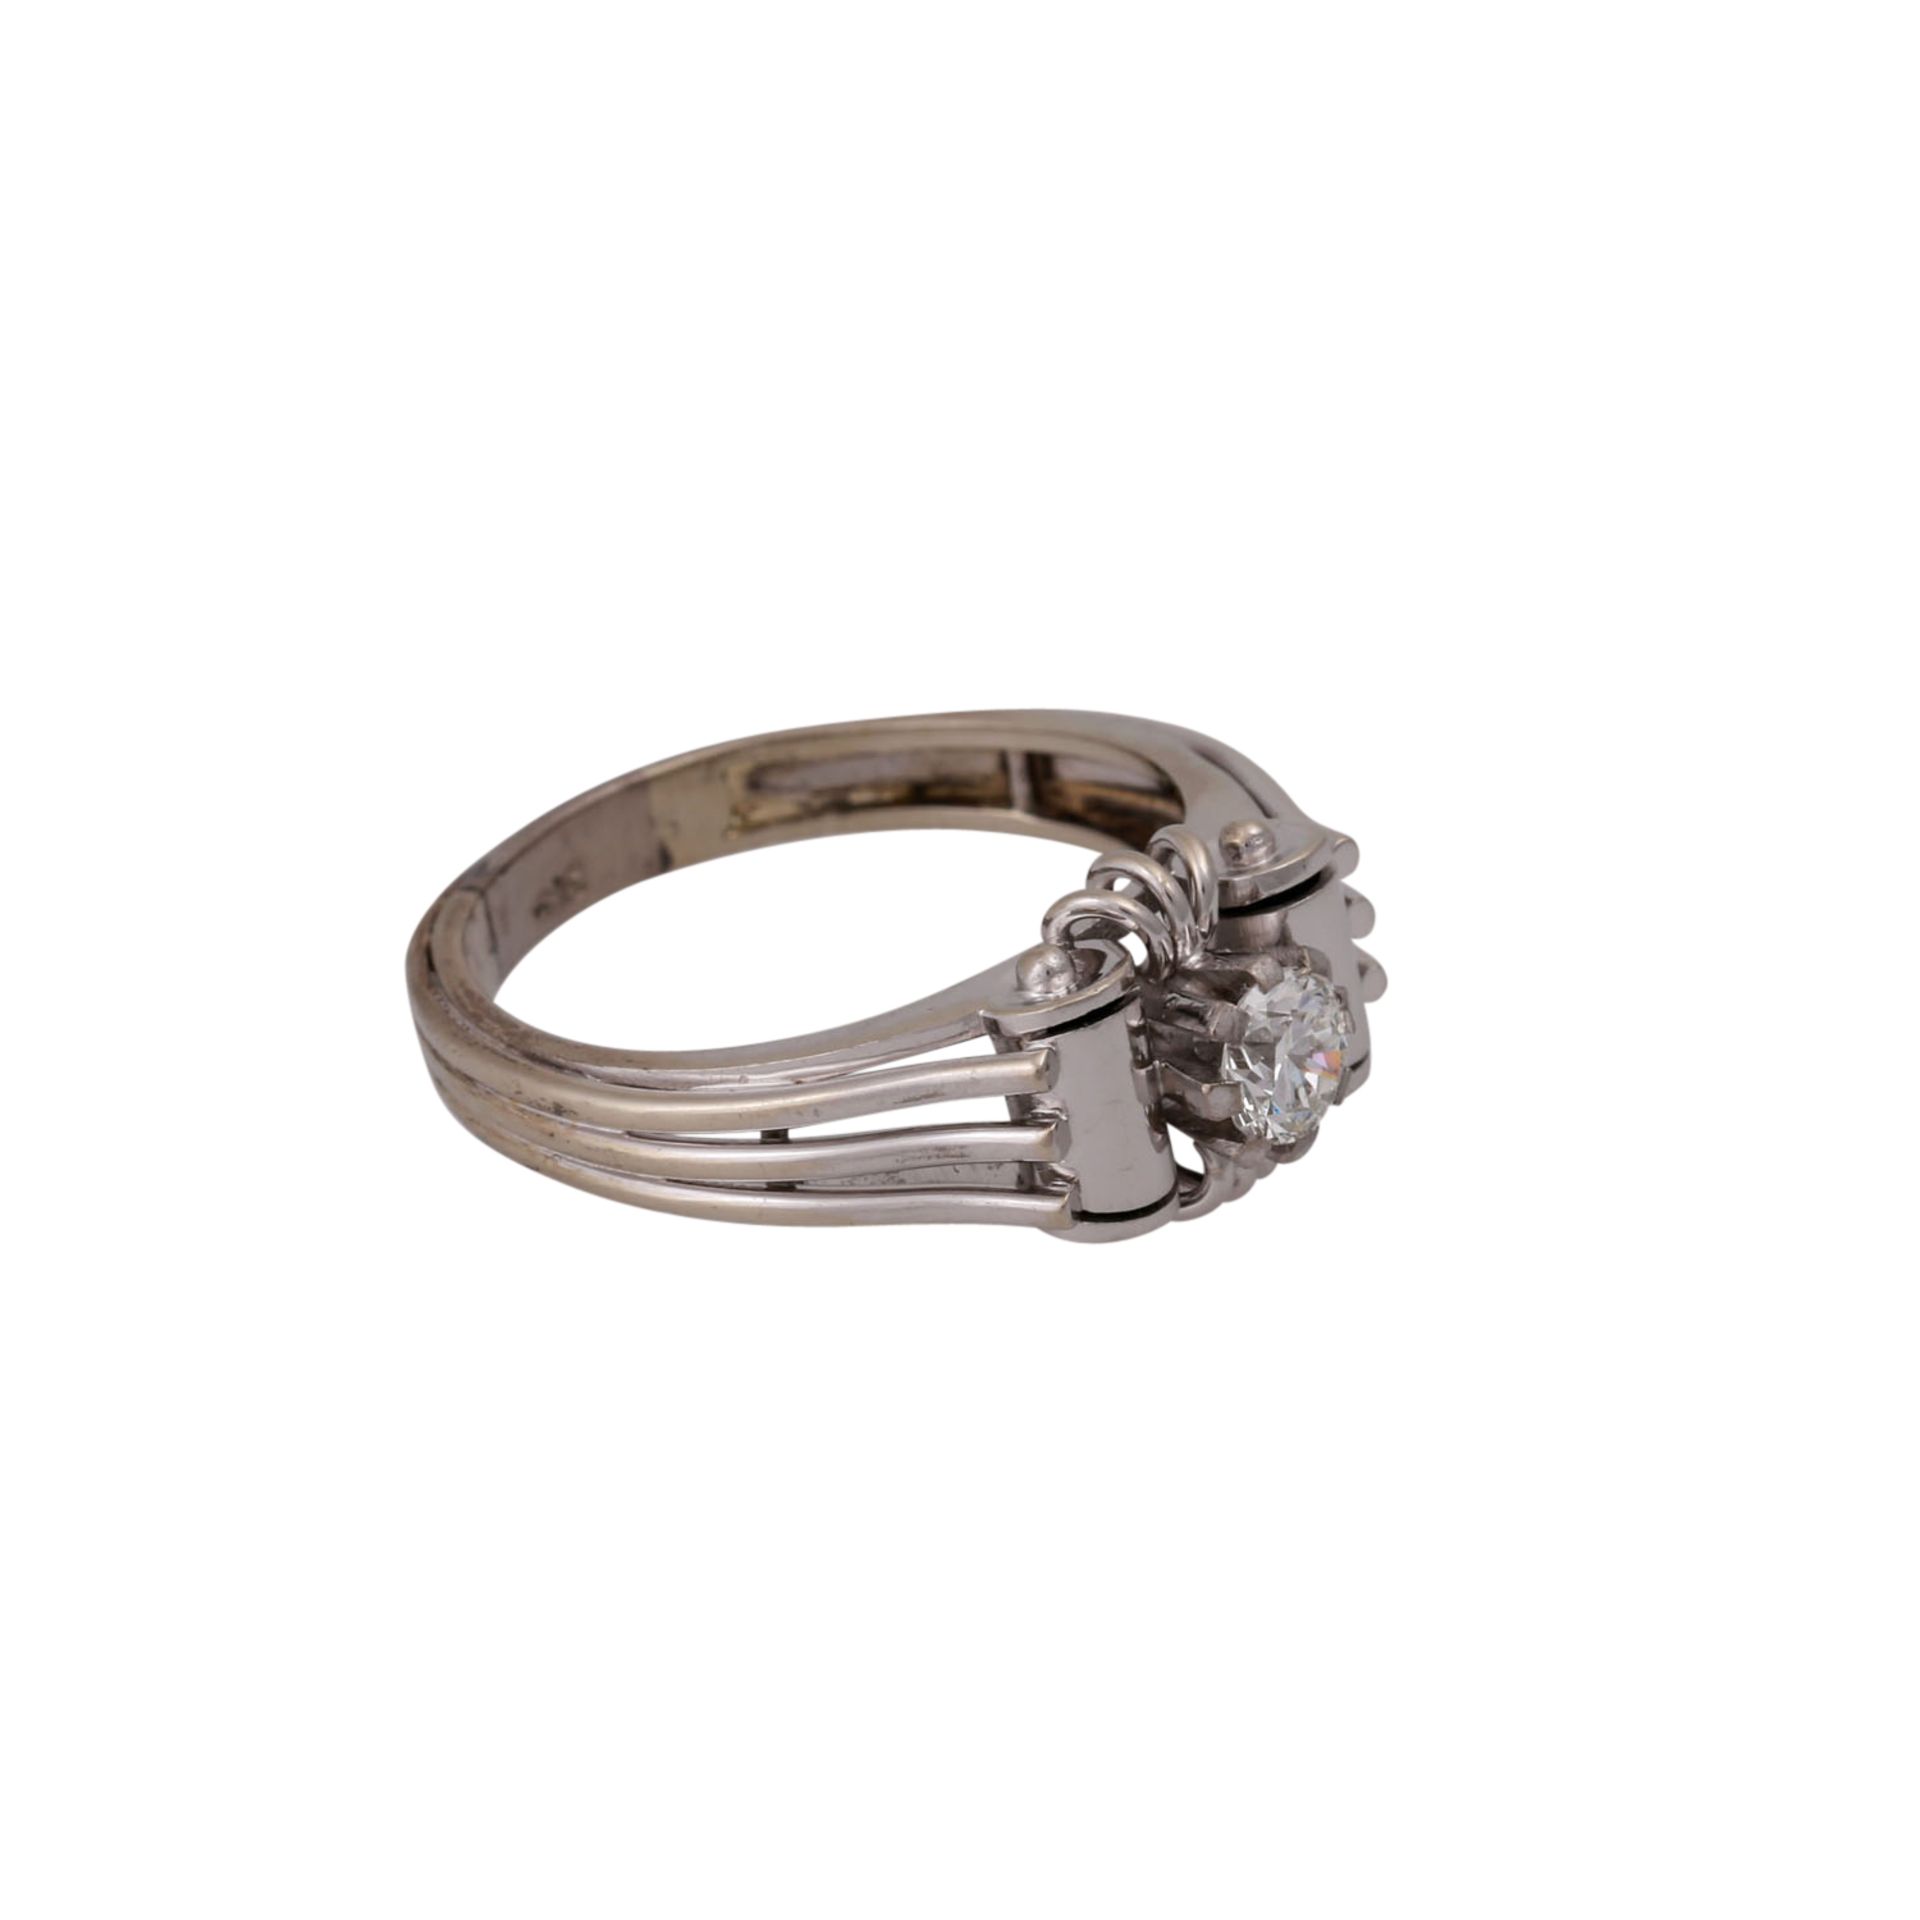 Ring mit Brillant ca. 0,28 ct,ca. WEISS-LGW (H-I)/VVS-VS, WG 14K, RW: 61, 1940er Jahre, Tragespuren, - Bild 2 aus 4